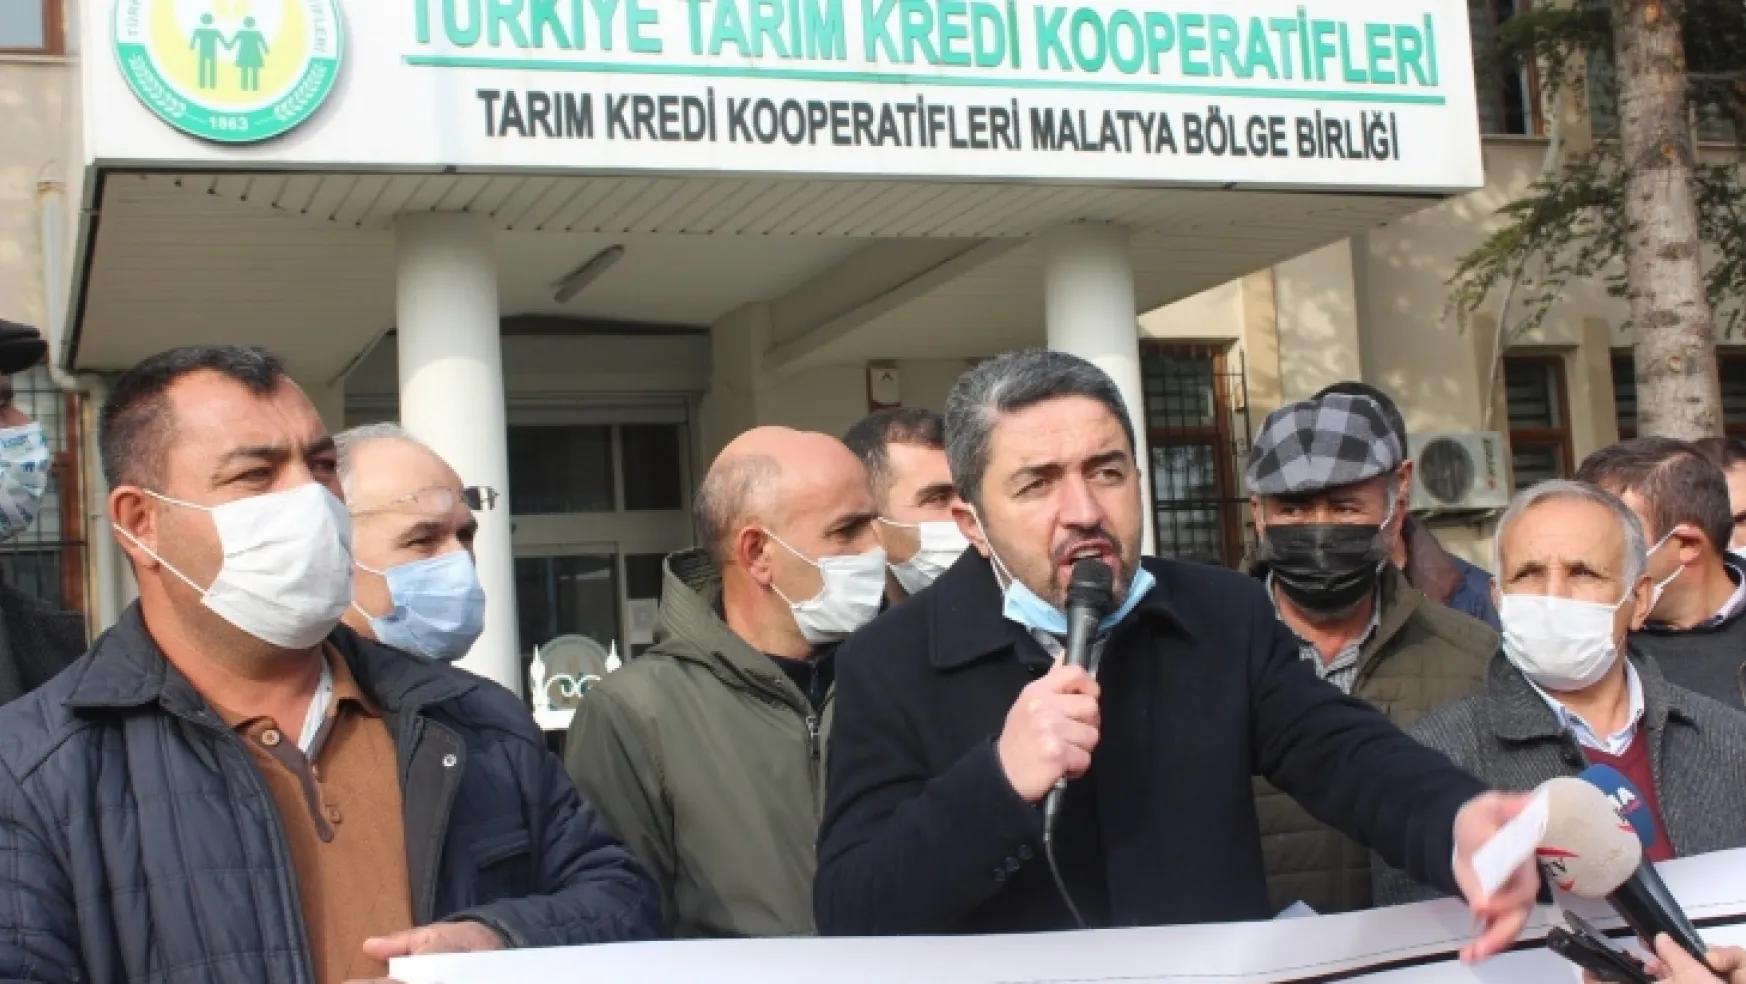 CHP il Başkanı Enver Kiraz 'Tarım Kredi Kooperatifleri, tefecinin de tefecisi'dedi.